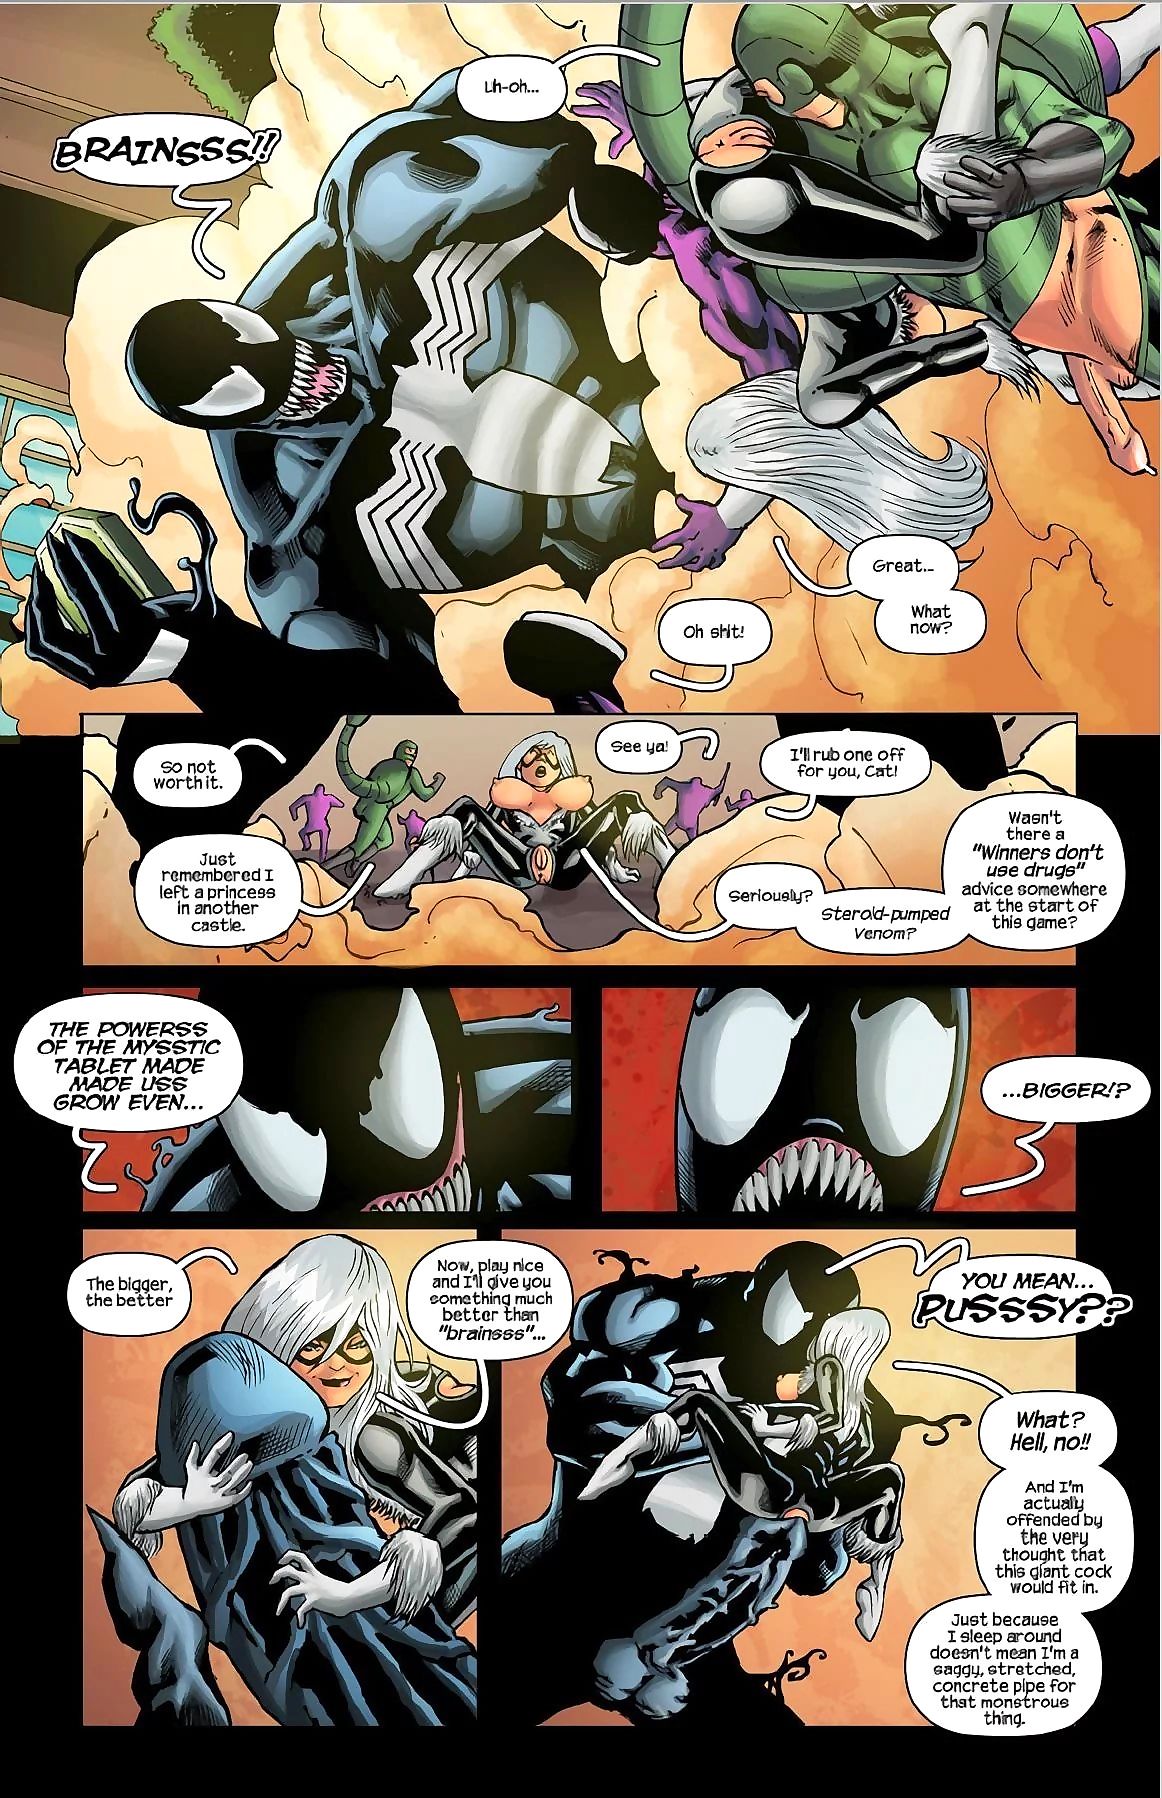 Tracy assiolo spiderman, il ’91 arcade Gioco page 1